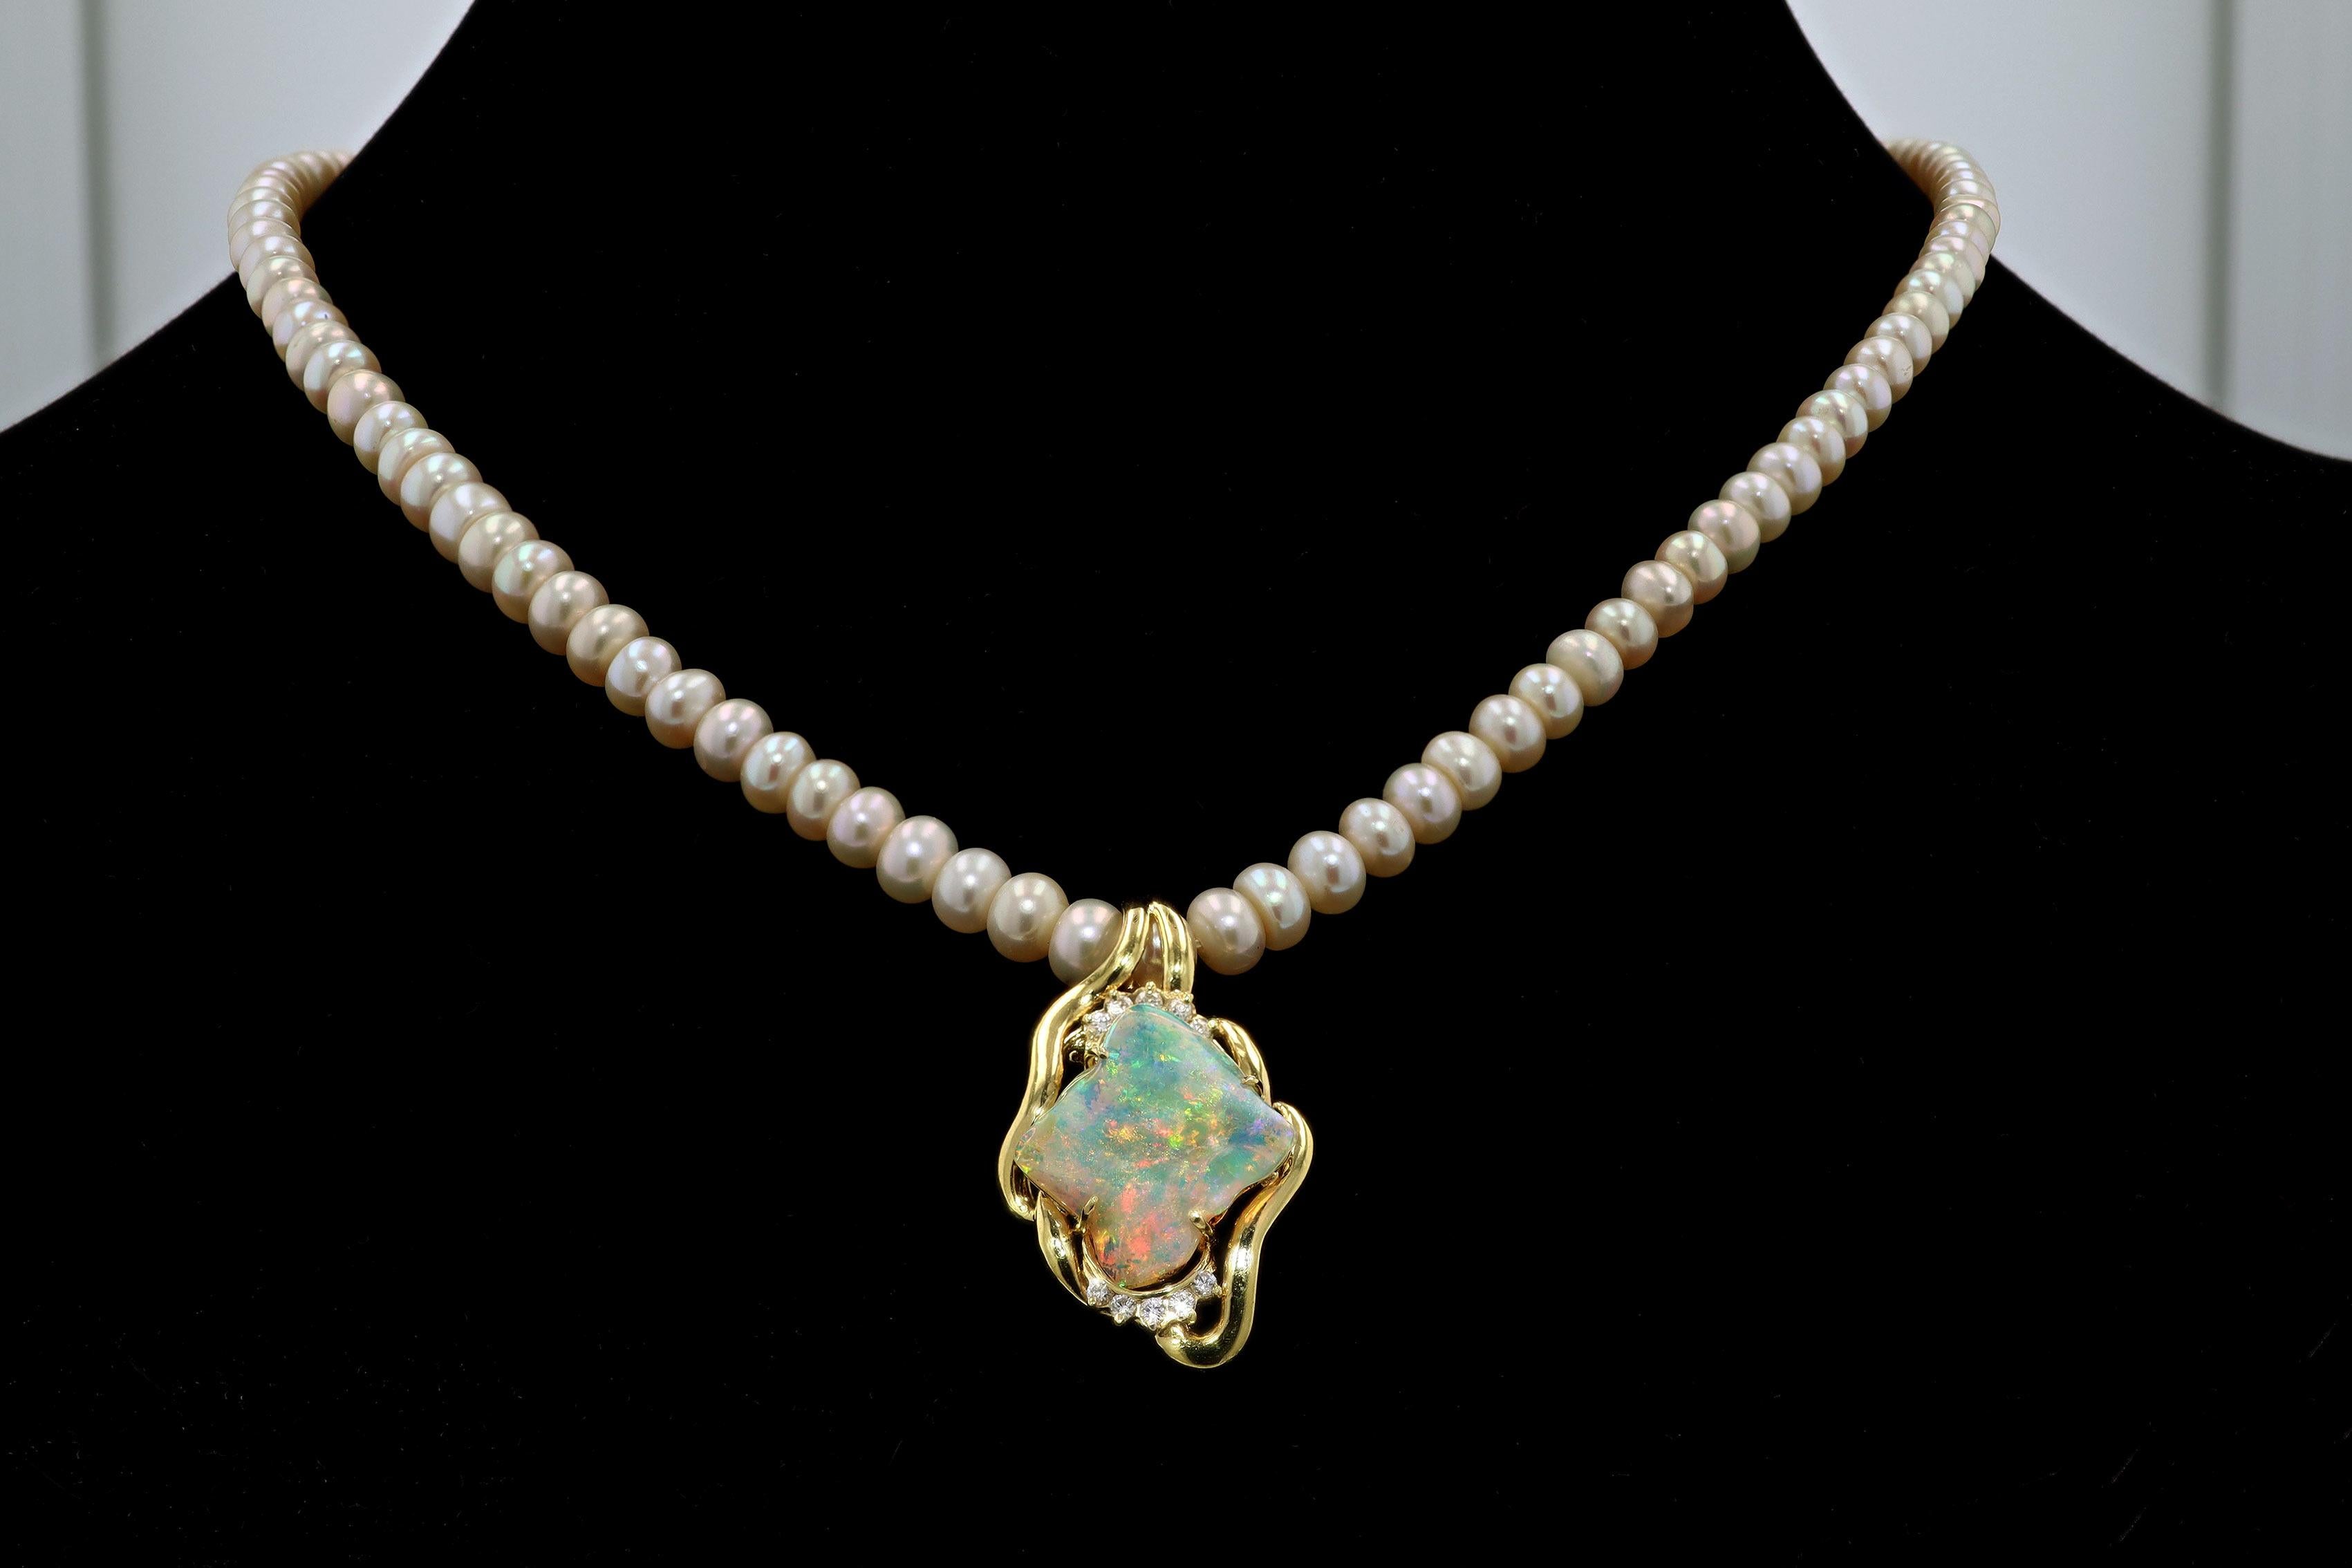 Mixed Cut Vintage 4.74 Carat Opal Pendant Necklace